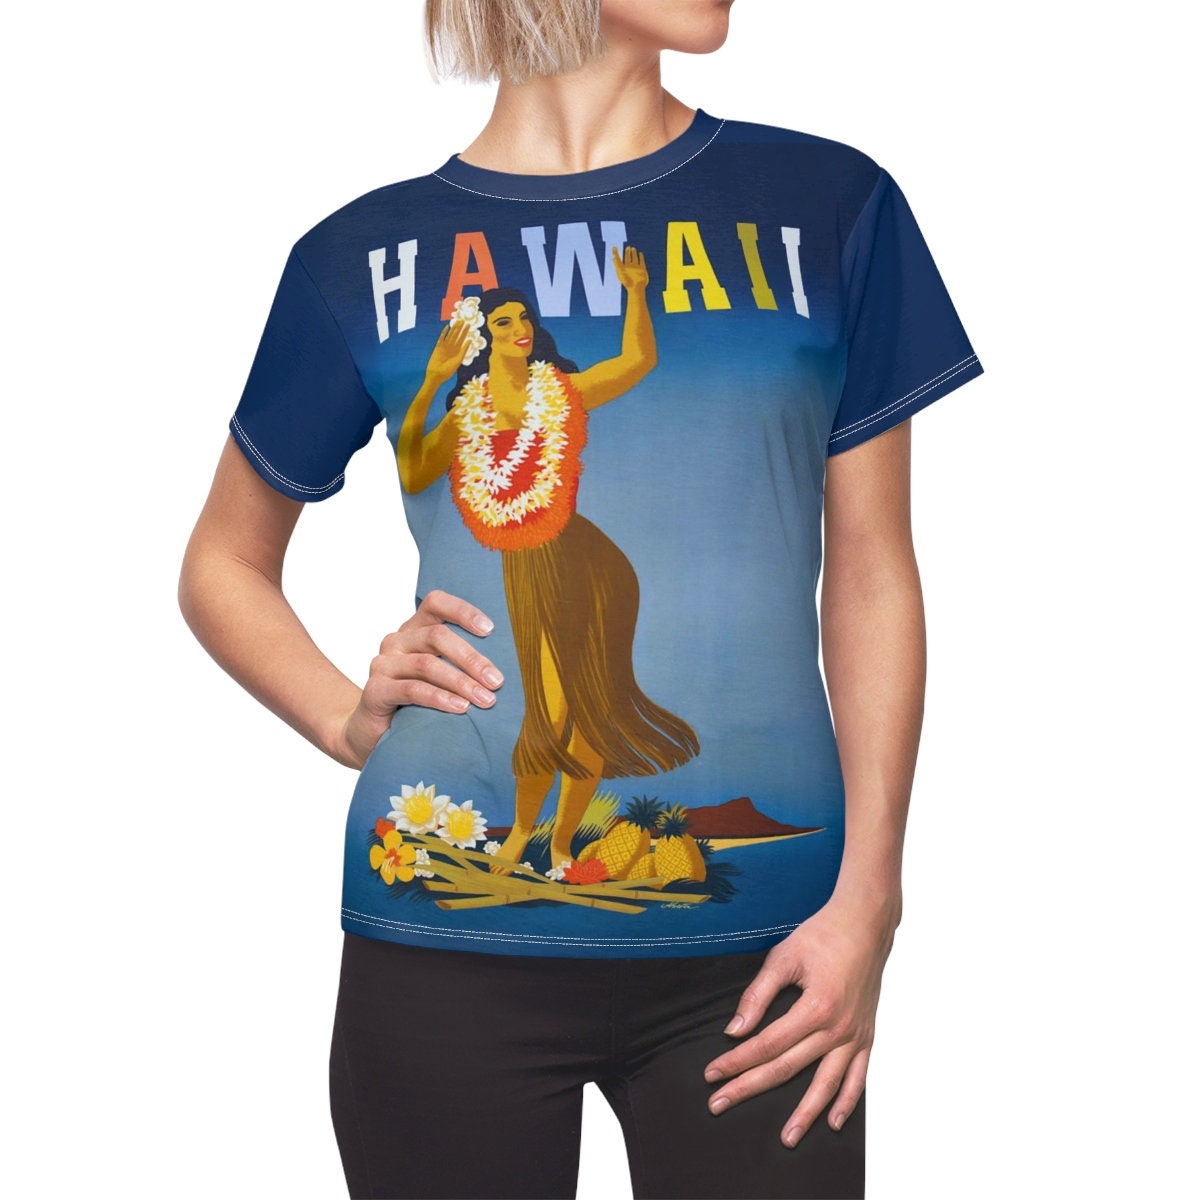 Tee Shirt /Hawaii /Women /Travel /T-shirt /Tee /Shirt /Vintage /Art /Poster /Birthday Gift /Clothing /Gift for Her - Chloe Lambertin